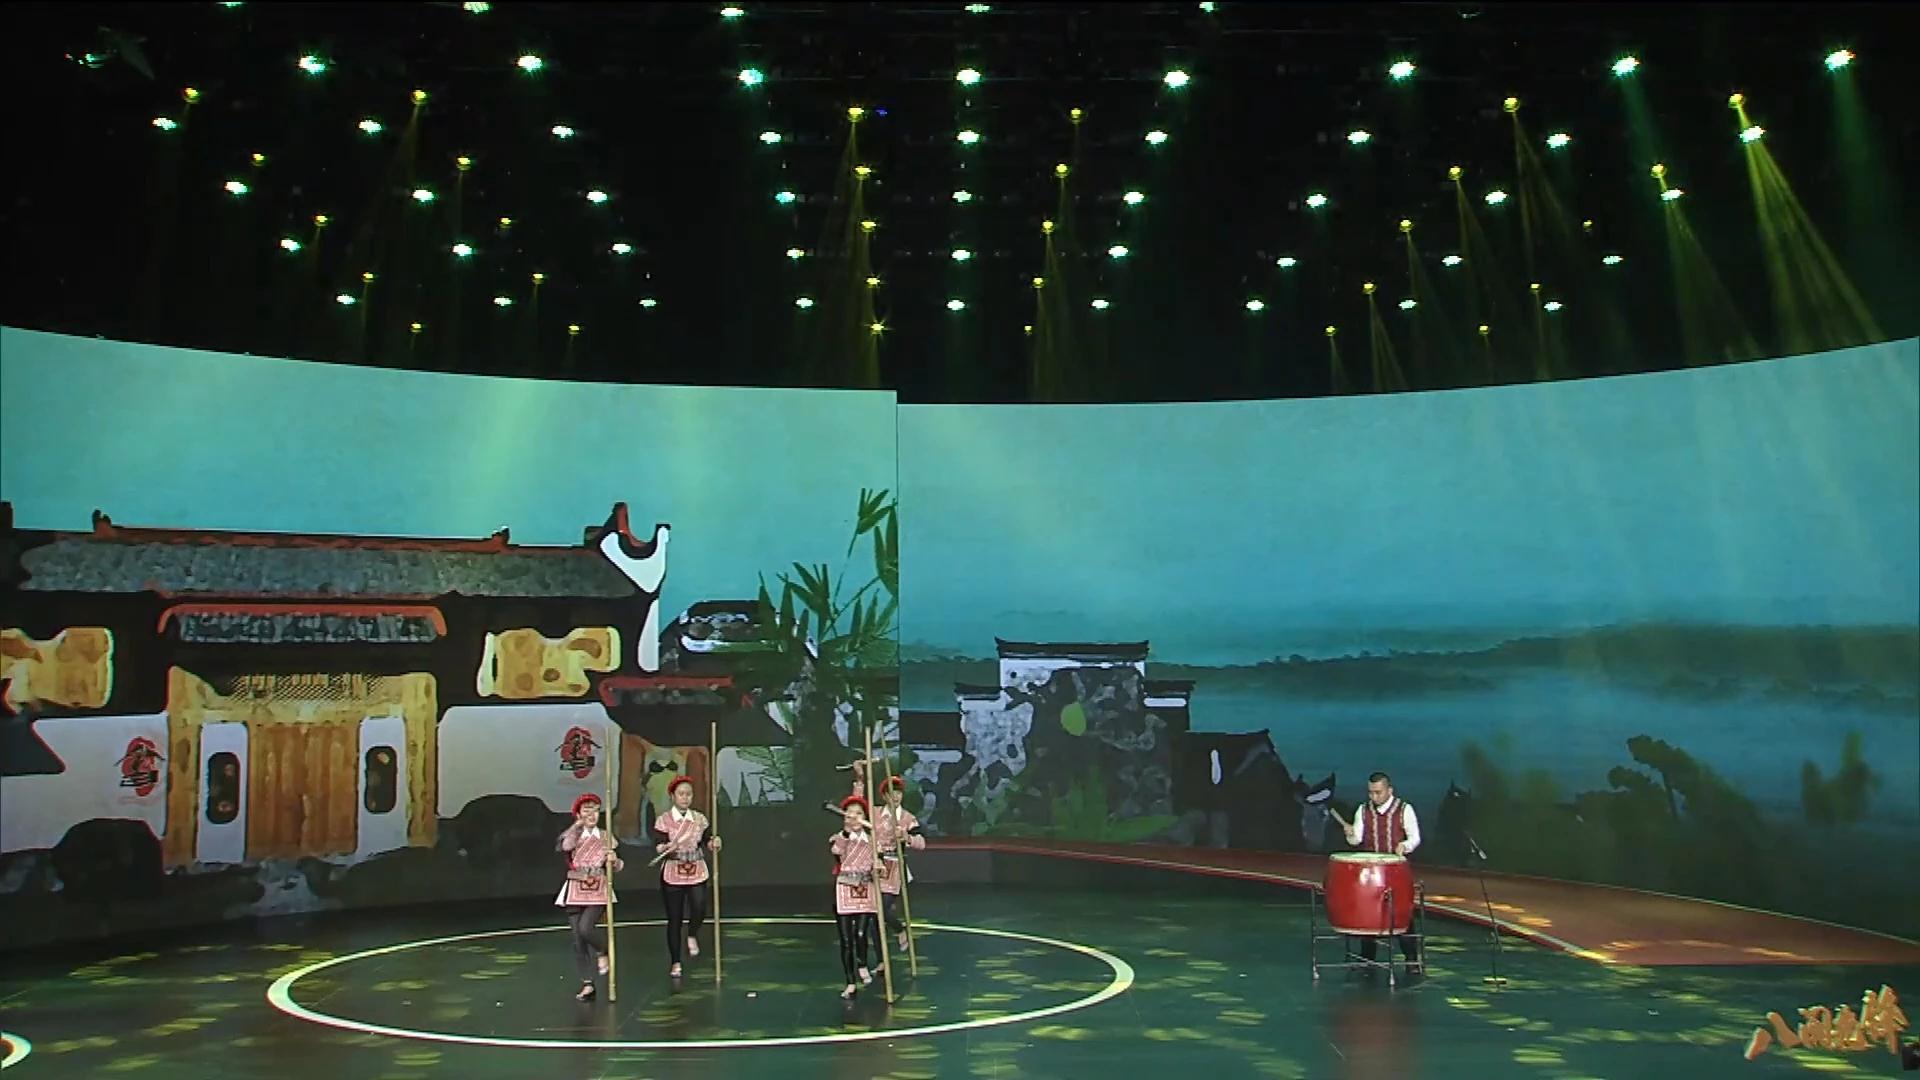 连江县天竹村畲族村民们带来的舞蹈